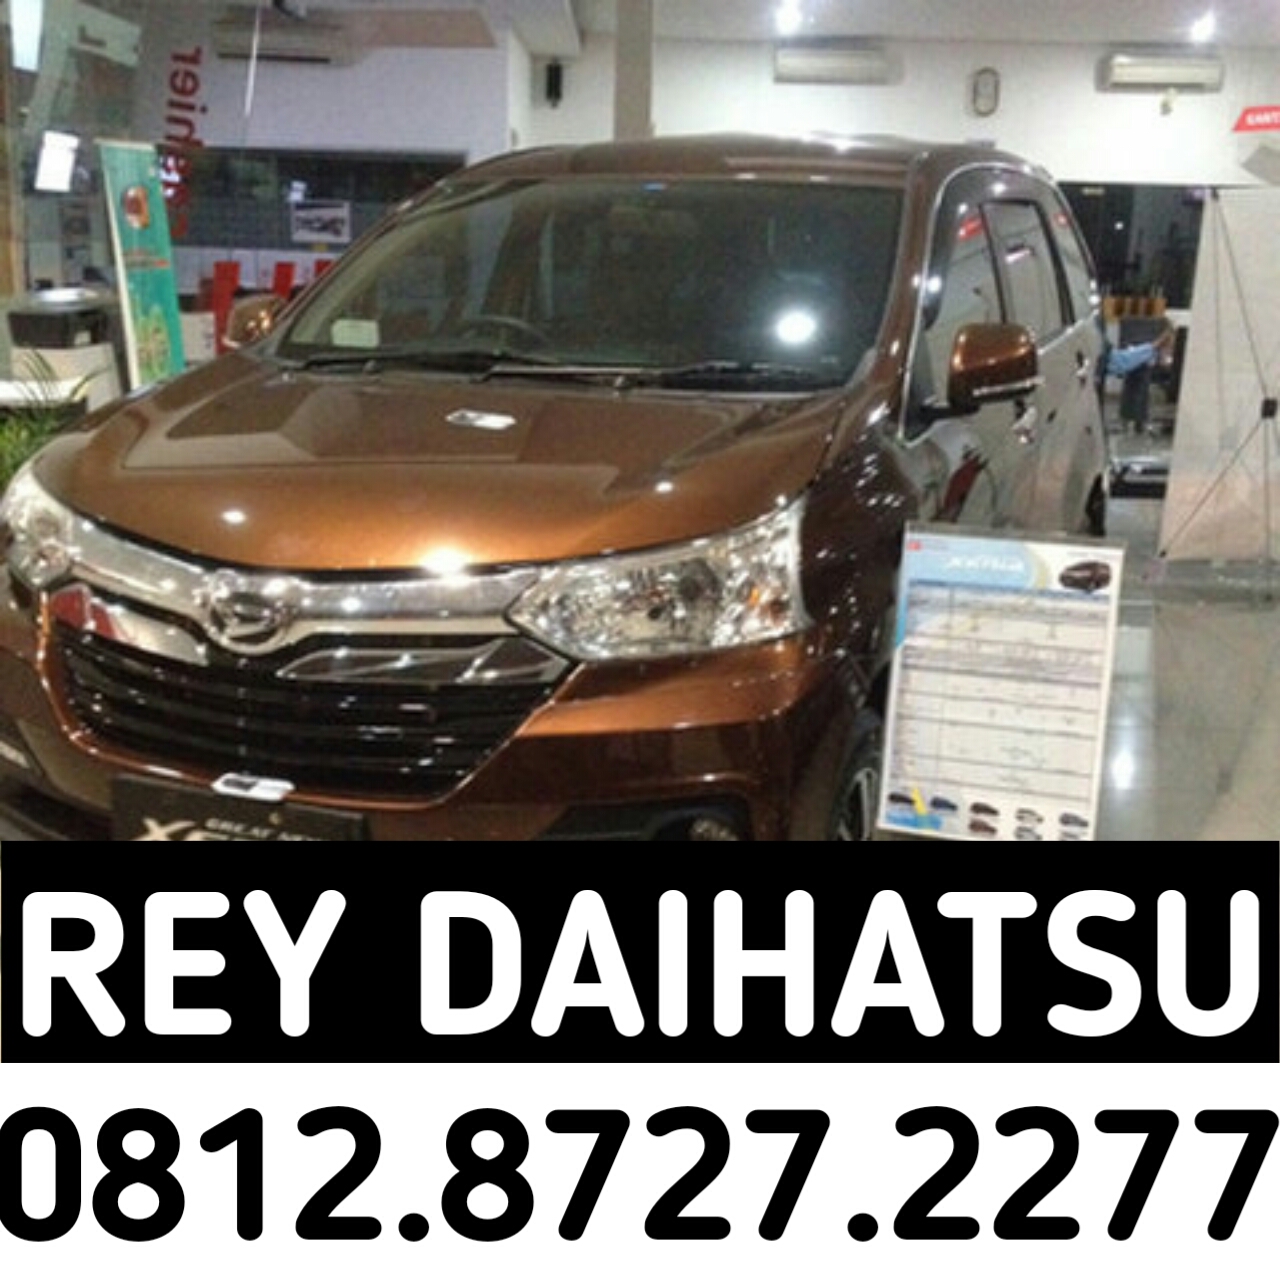 Sales Daihatsu Surabaya  INFO KREDIT  DP  MURAH  NEW DAIHATSU 